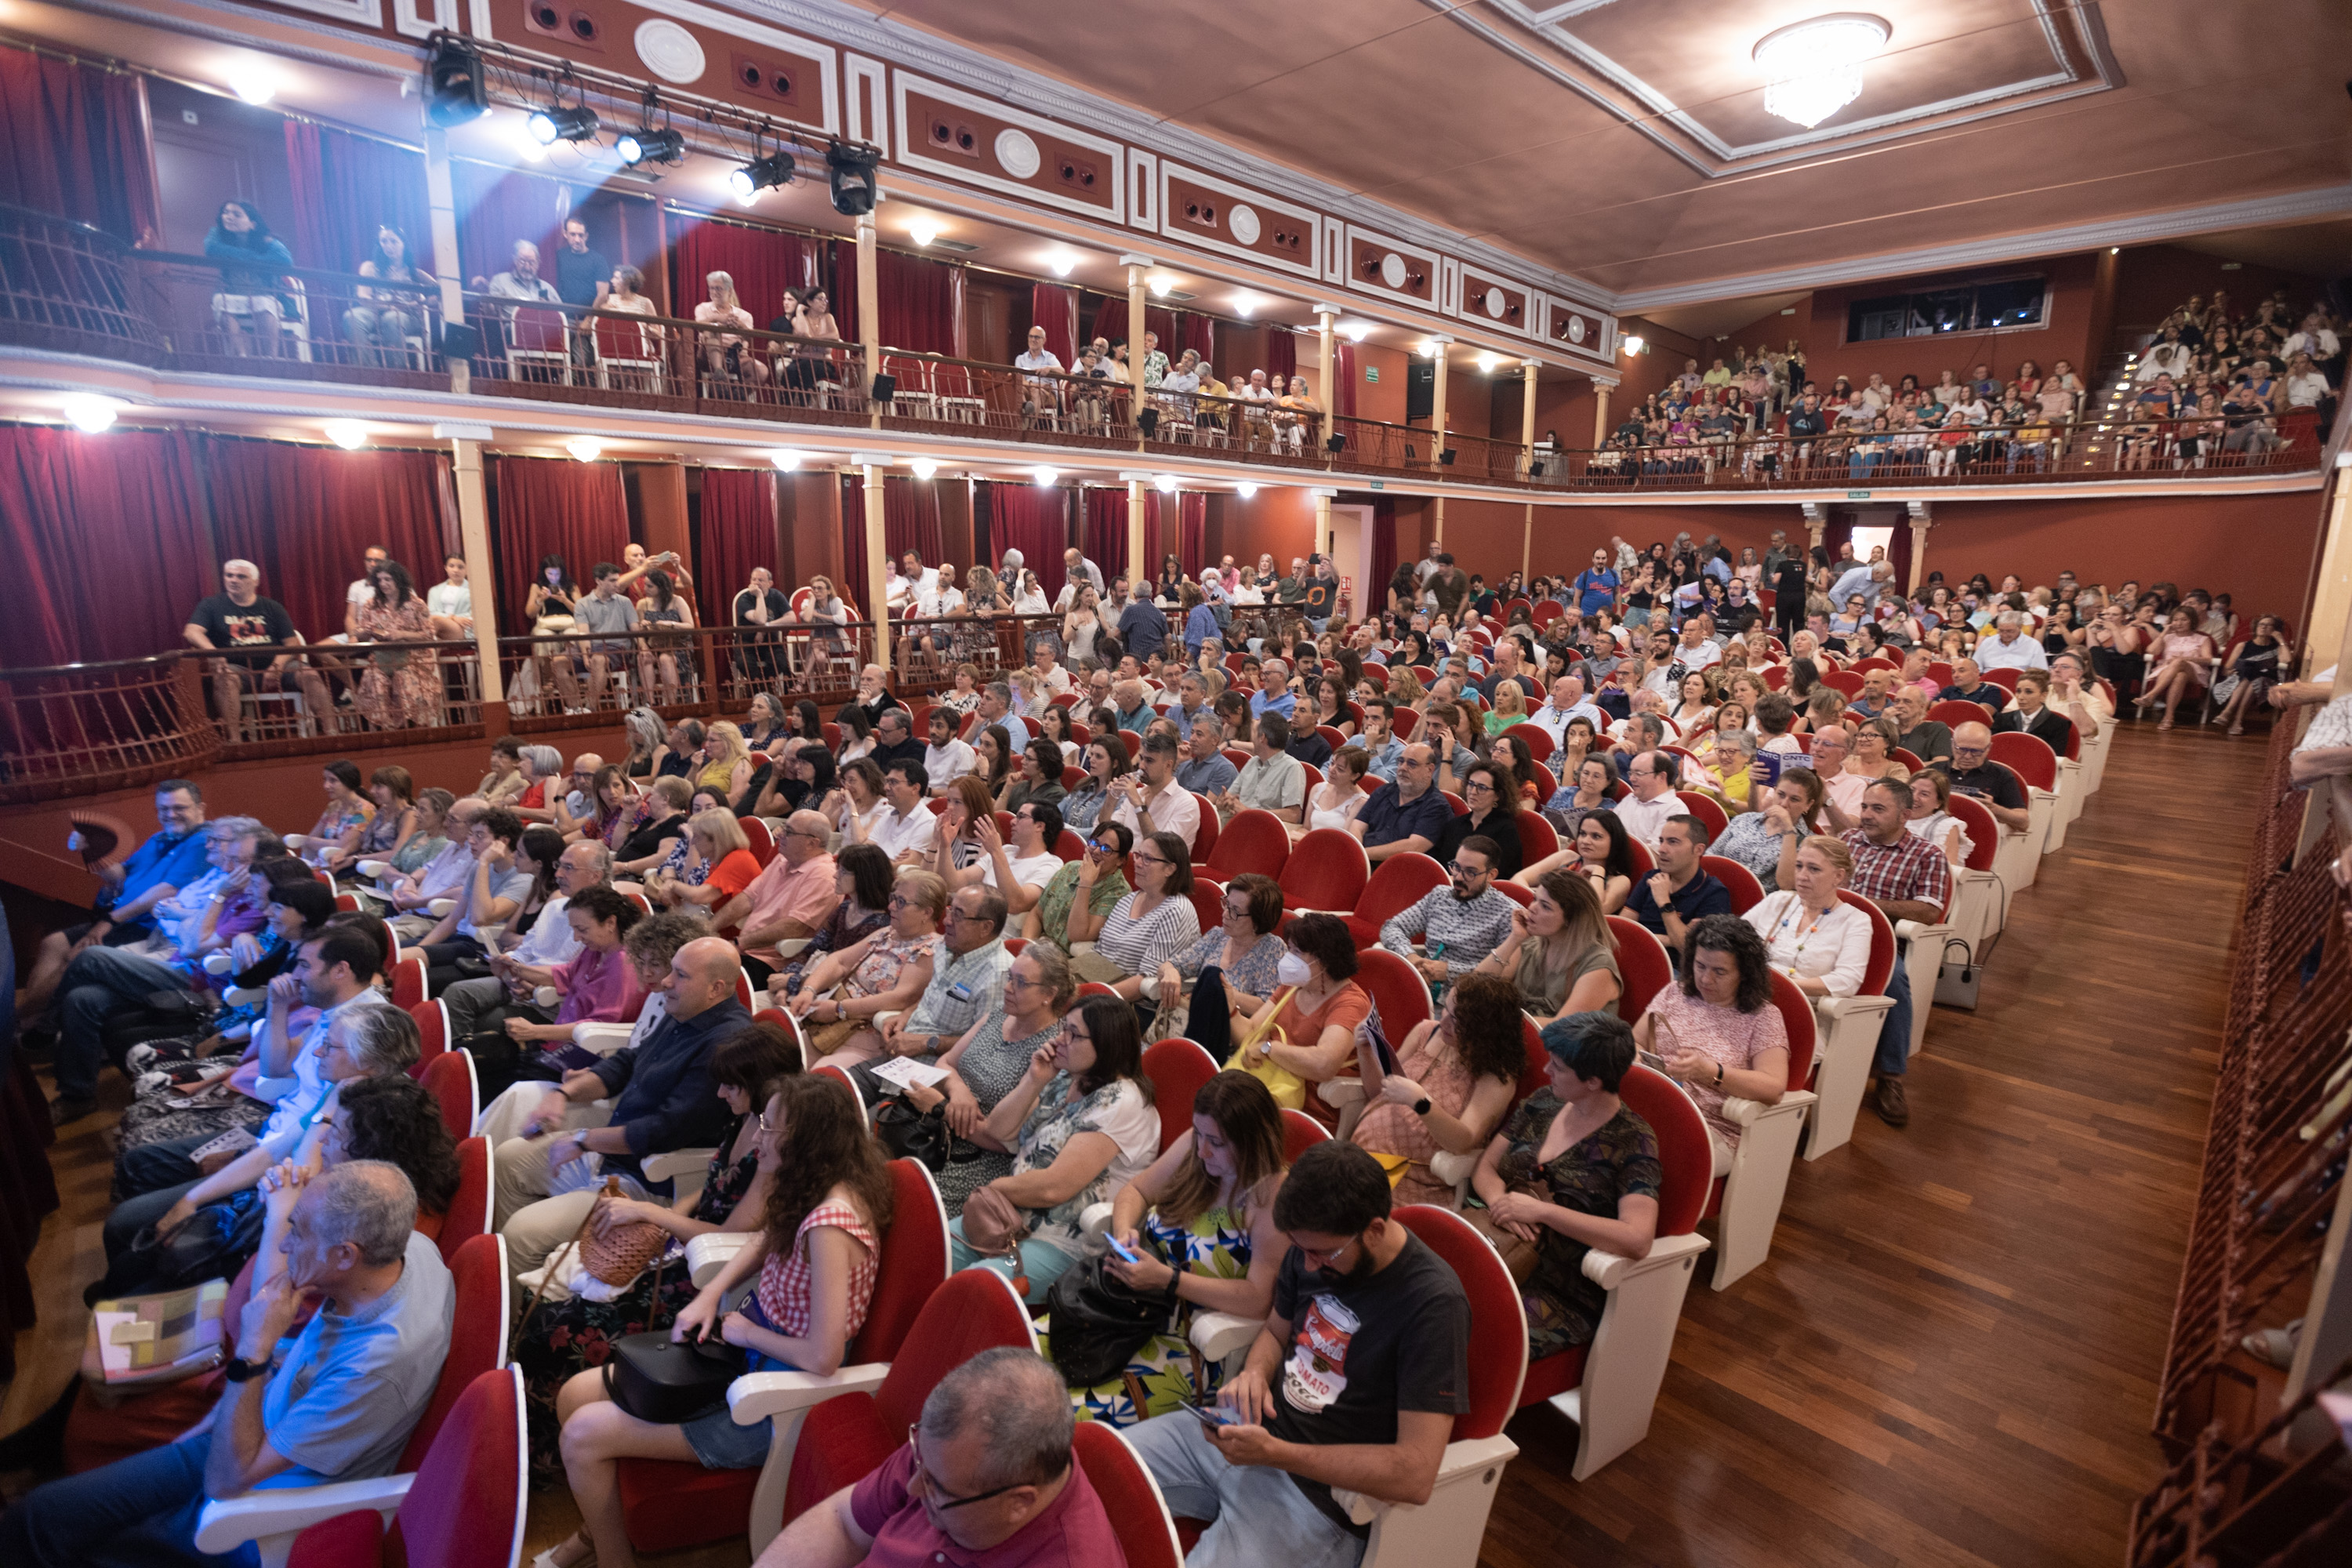 El XXII Festival Iberoamericano del Siglo de Oro de la Comunidad de Madrid. Clásicos en Alcalá echa el telón con alrededor de 8.500 espectadores y 17 llenos absolutos